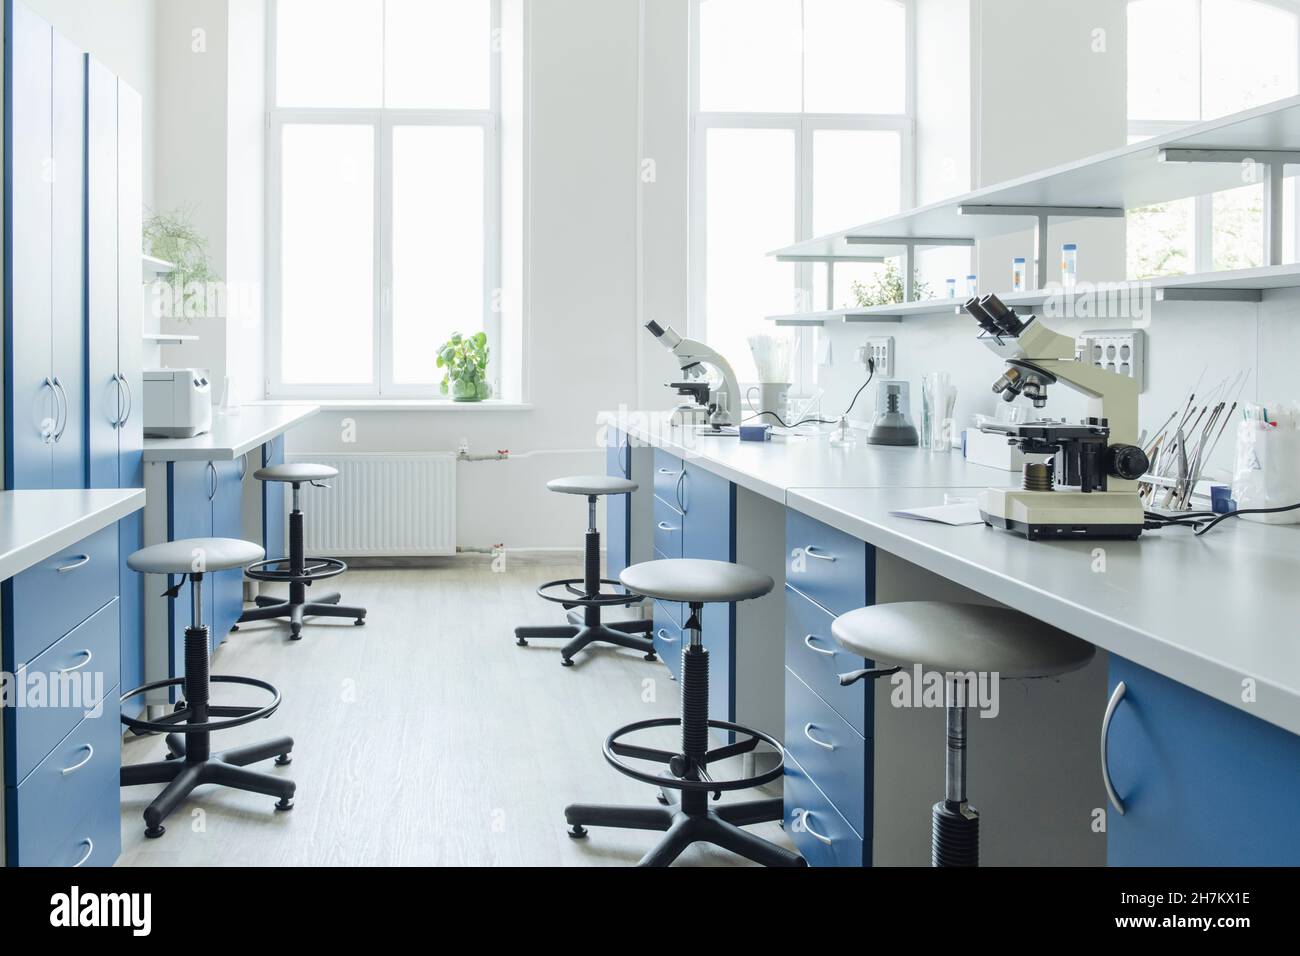 Microscopes at desk in bright empty laboratory Stock Photo